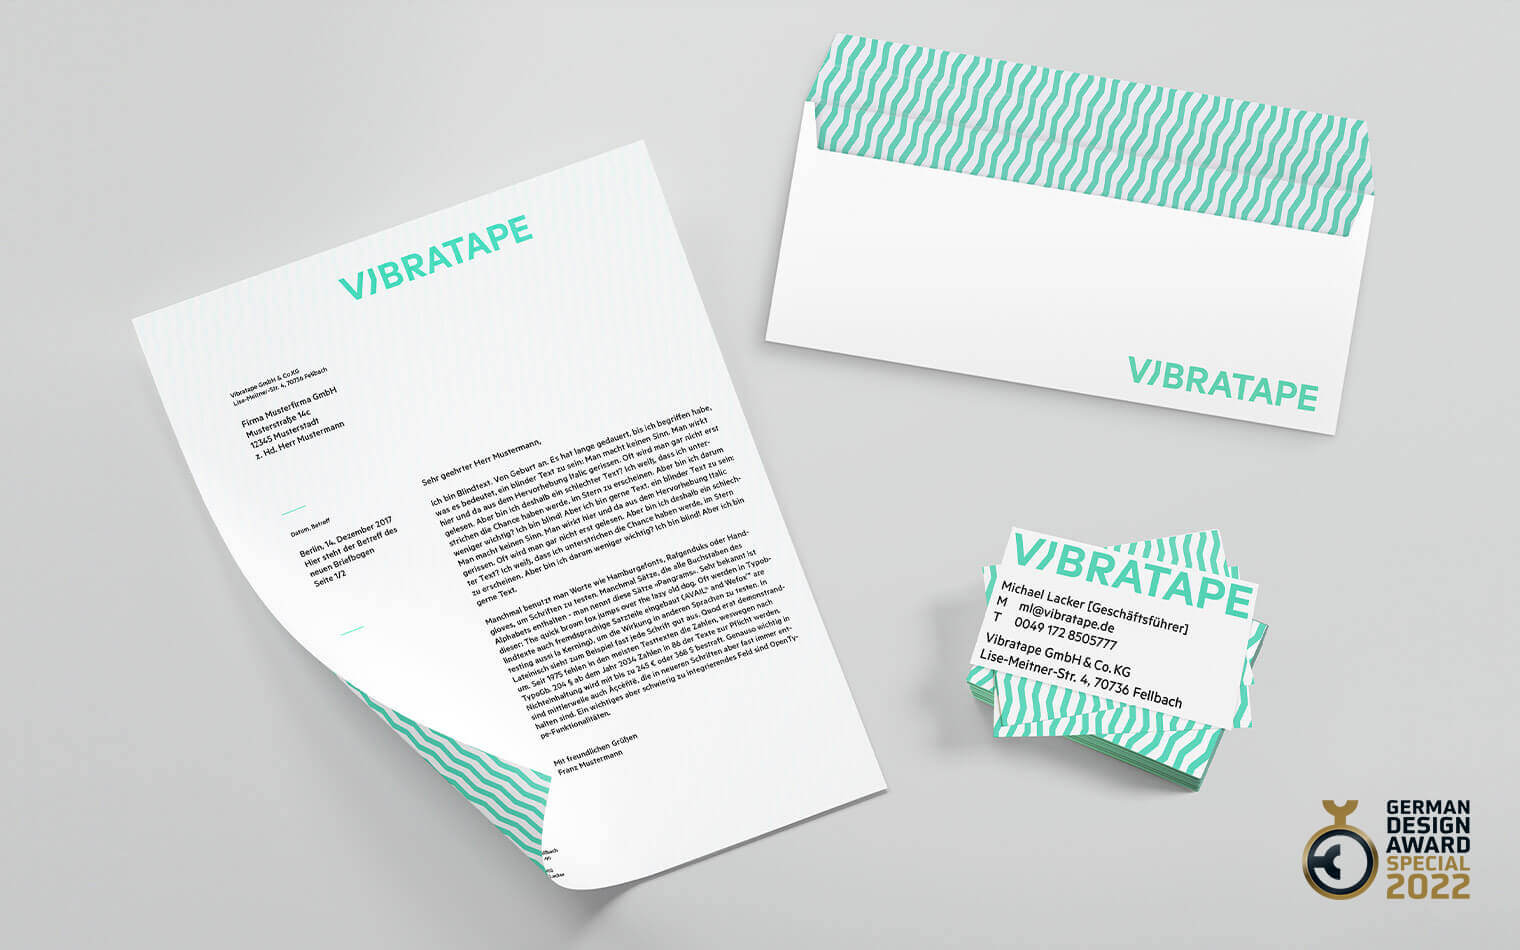 Auf diesem Bild sind die Geschäftsausstattung von Vibratape und das Logo German Design Award 2022 Special zu sehen.